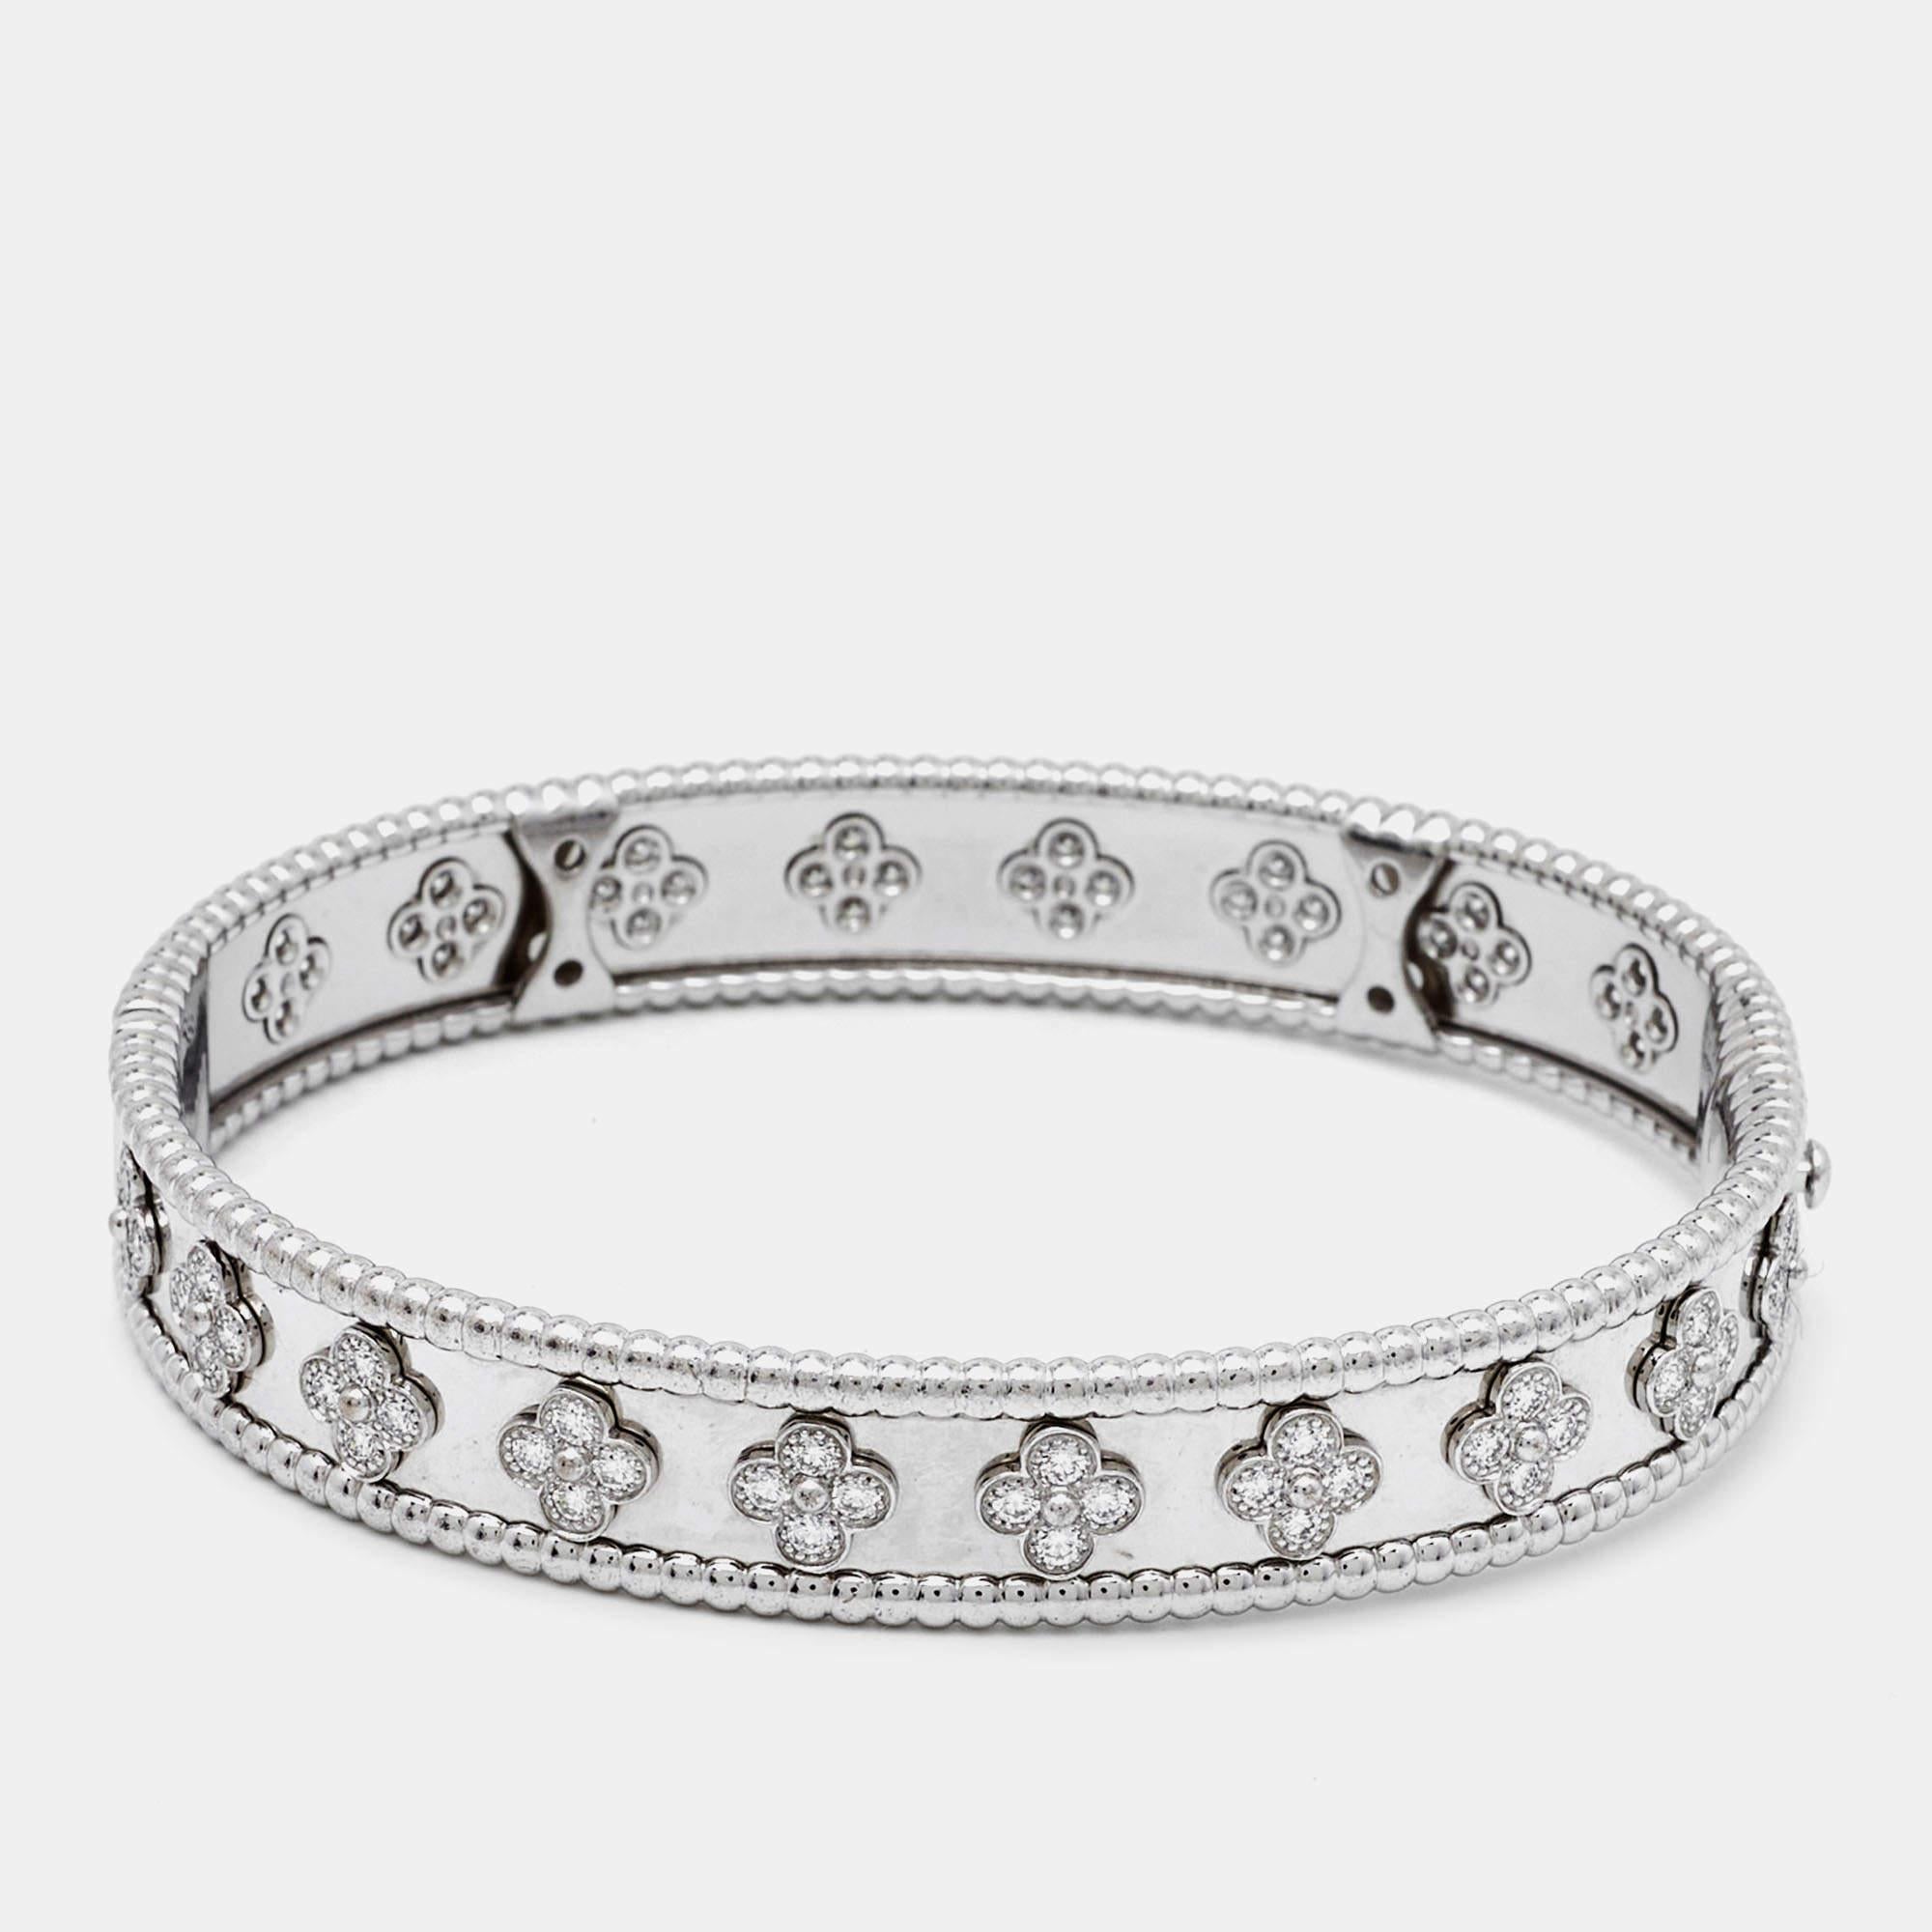 Ce bracelet de créateur est sculpté dans de l'or blanc 18 carats et mis en valeur par des diamants étincelants. D'une finition lisse, cette création désirable mérite d'être à votre poignet.

